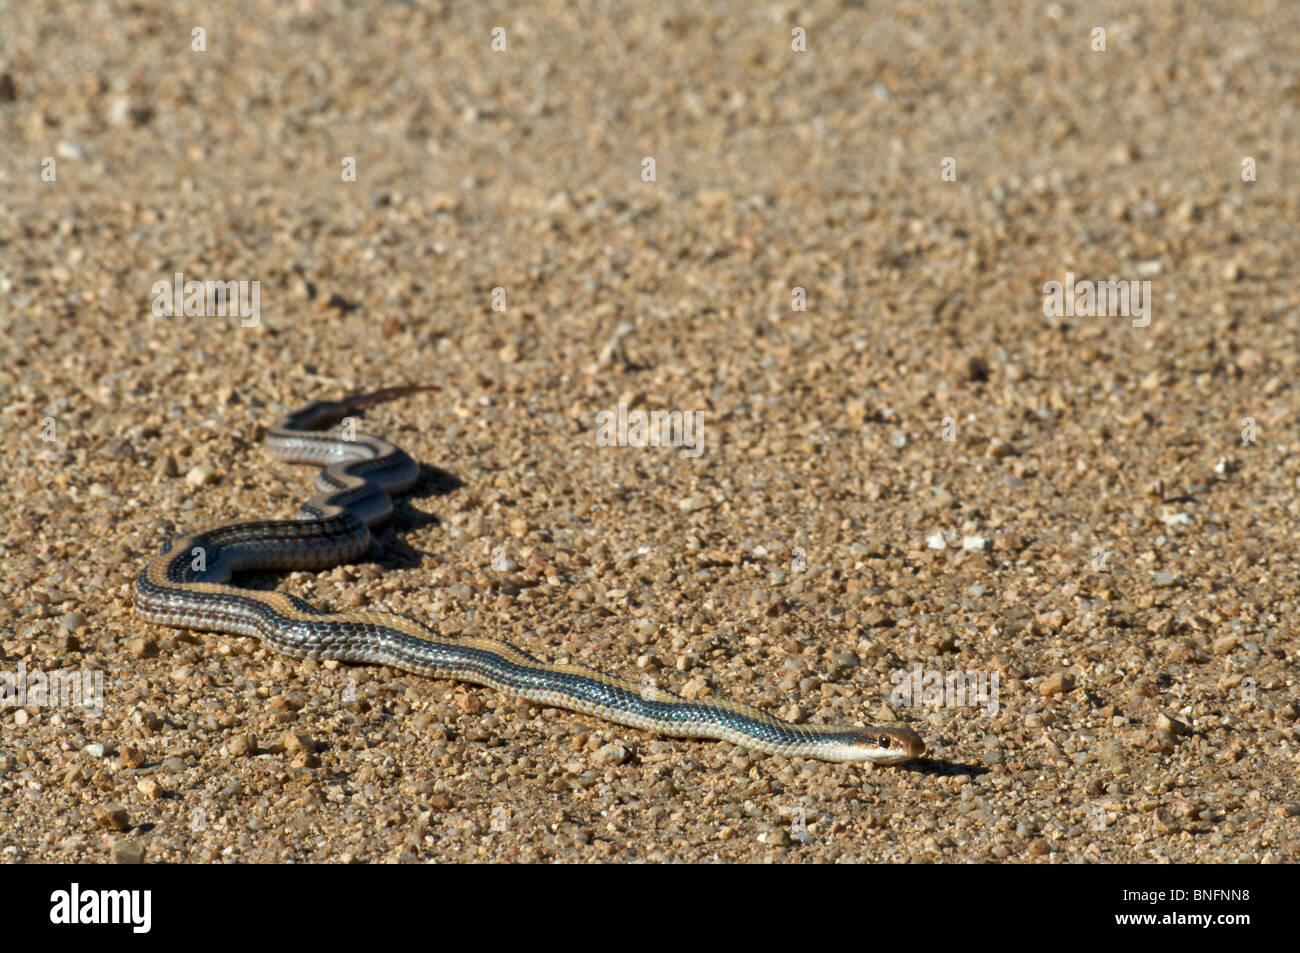 Un désert Patch-nosed Snake (Salvadora hexalepis hexalepis) au soleil sur une route de terre dans le comté de Graham, Arizona. Banque D'Images